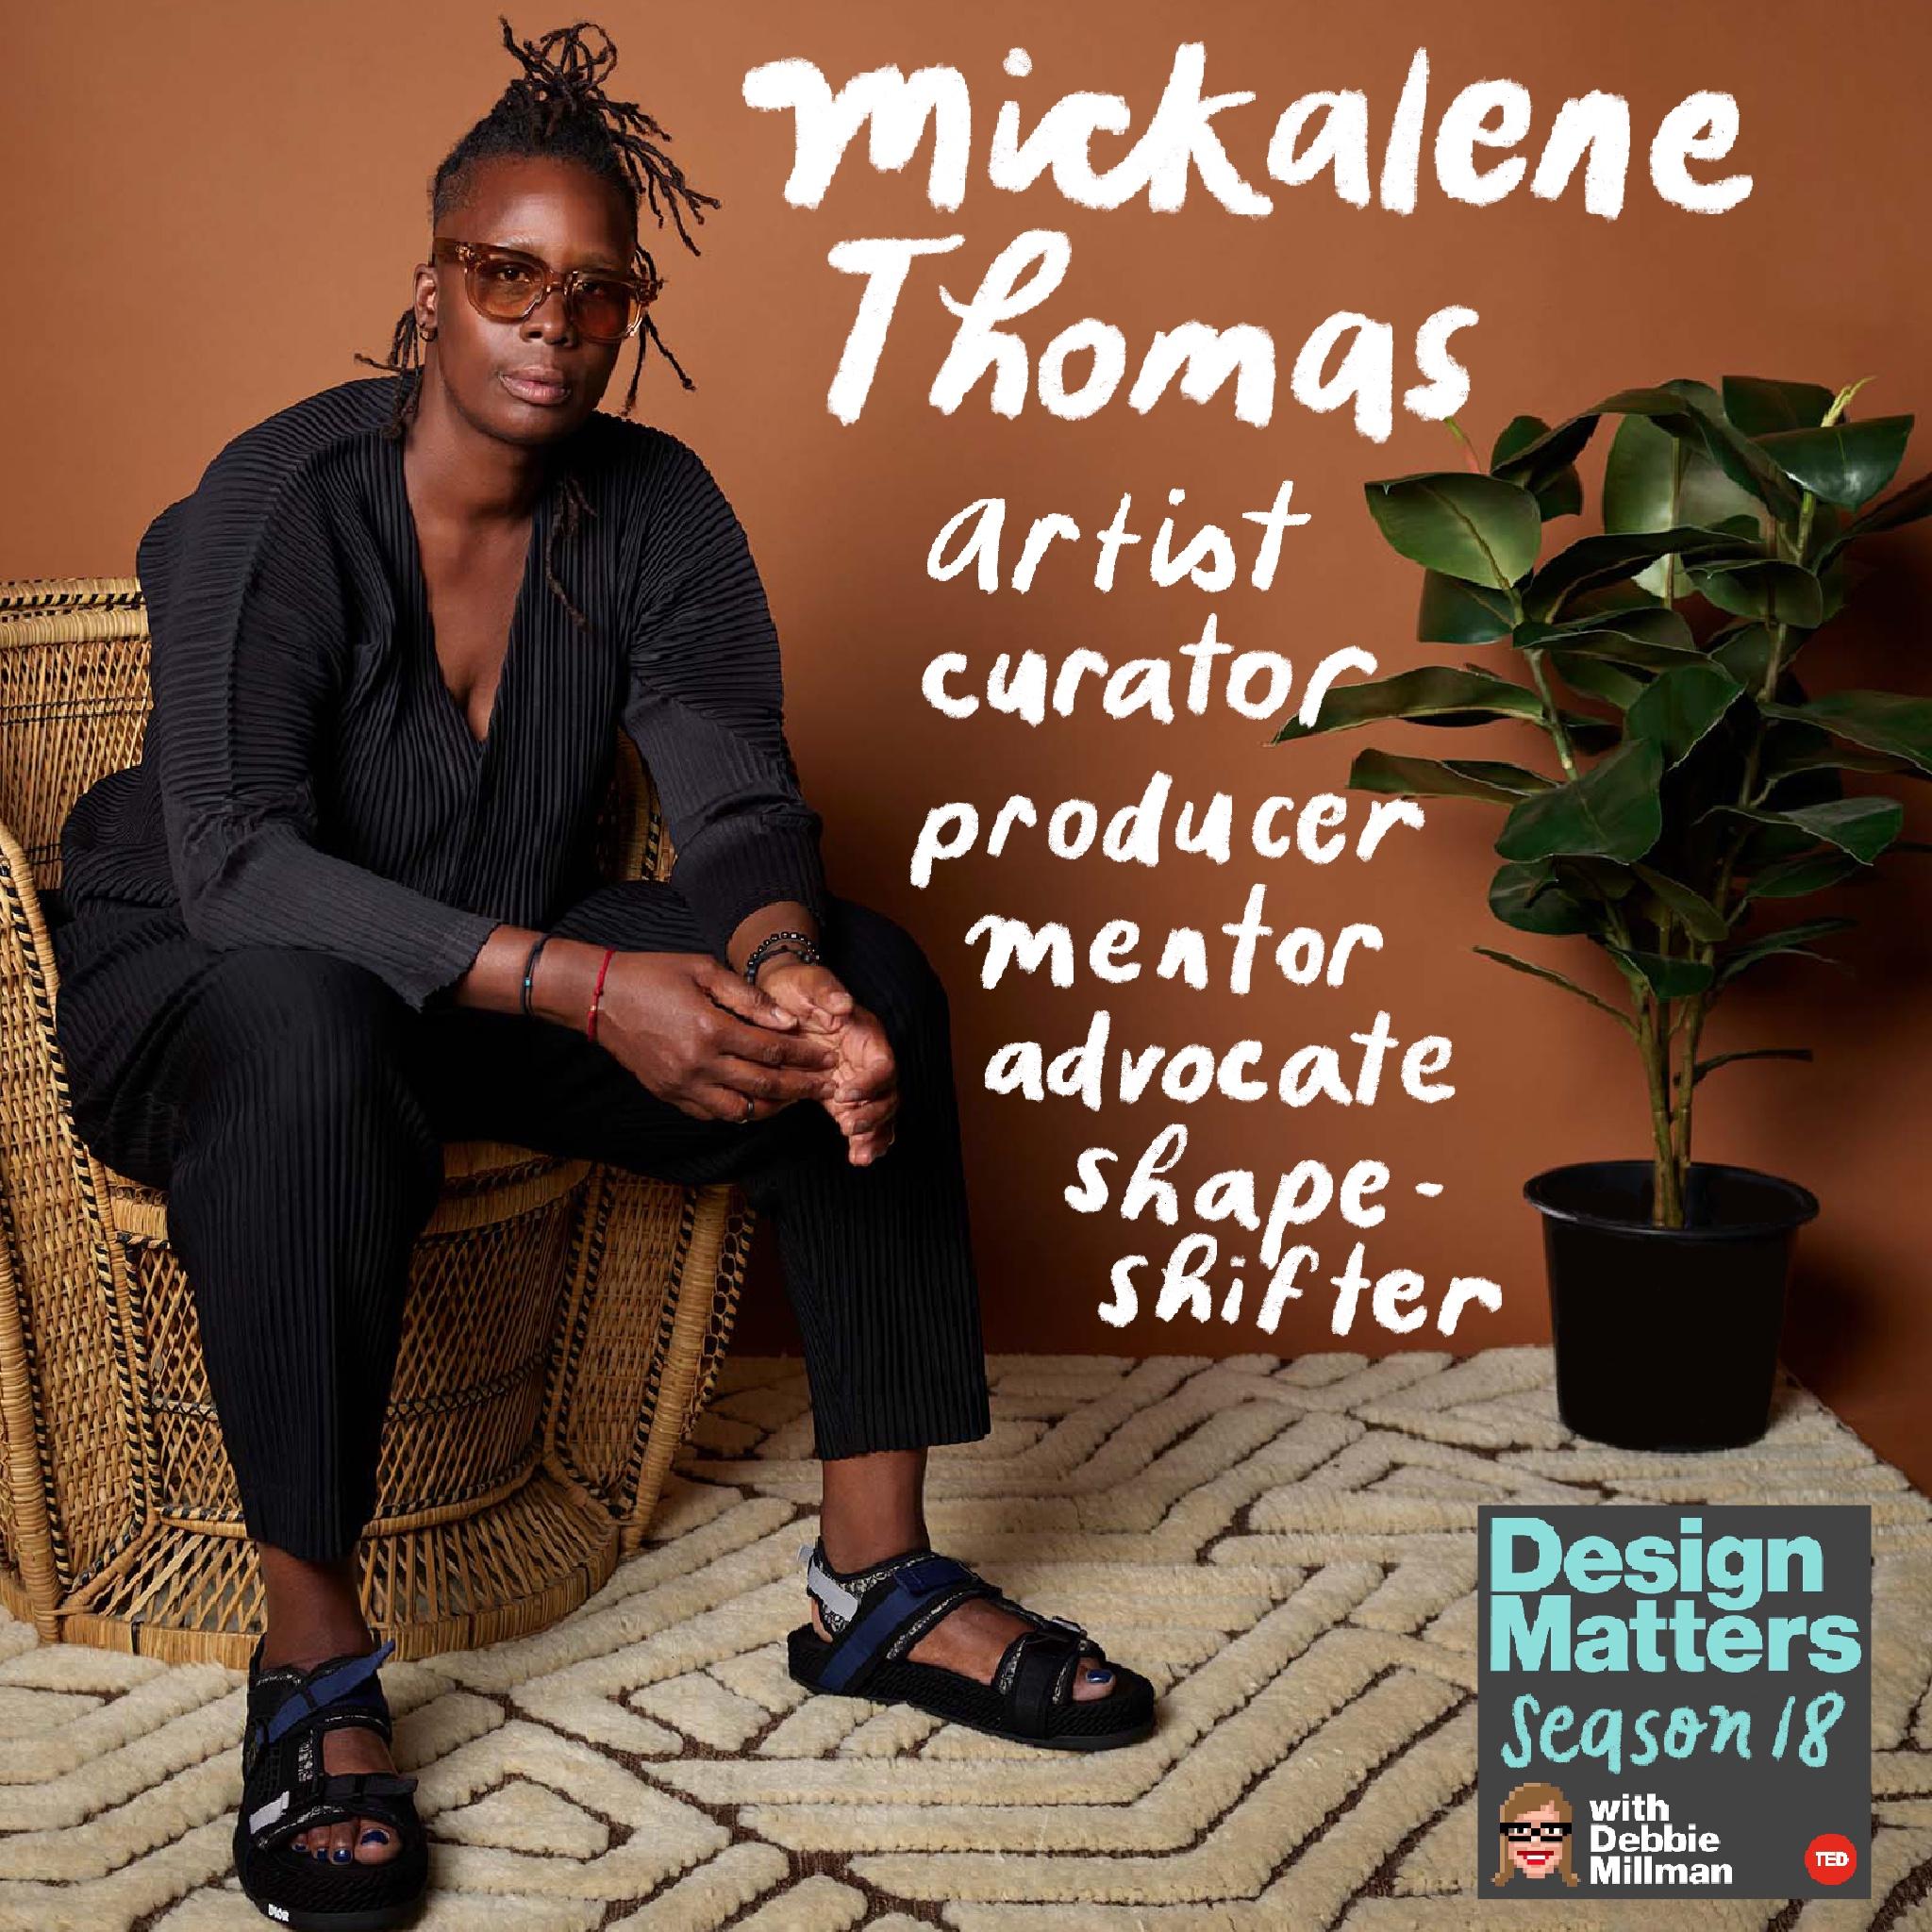 Thumbnail for "Best of Design Matters: Mickalene Thomas".